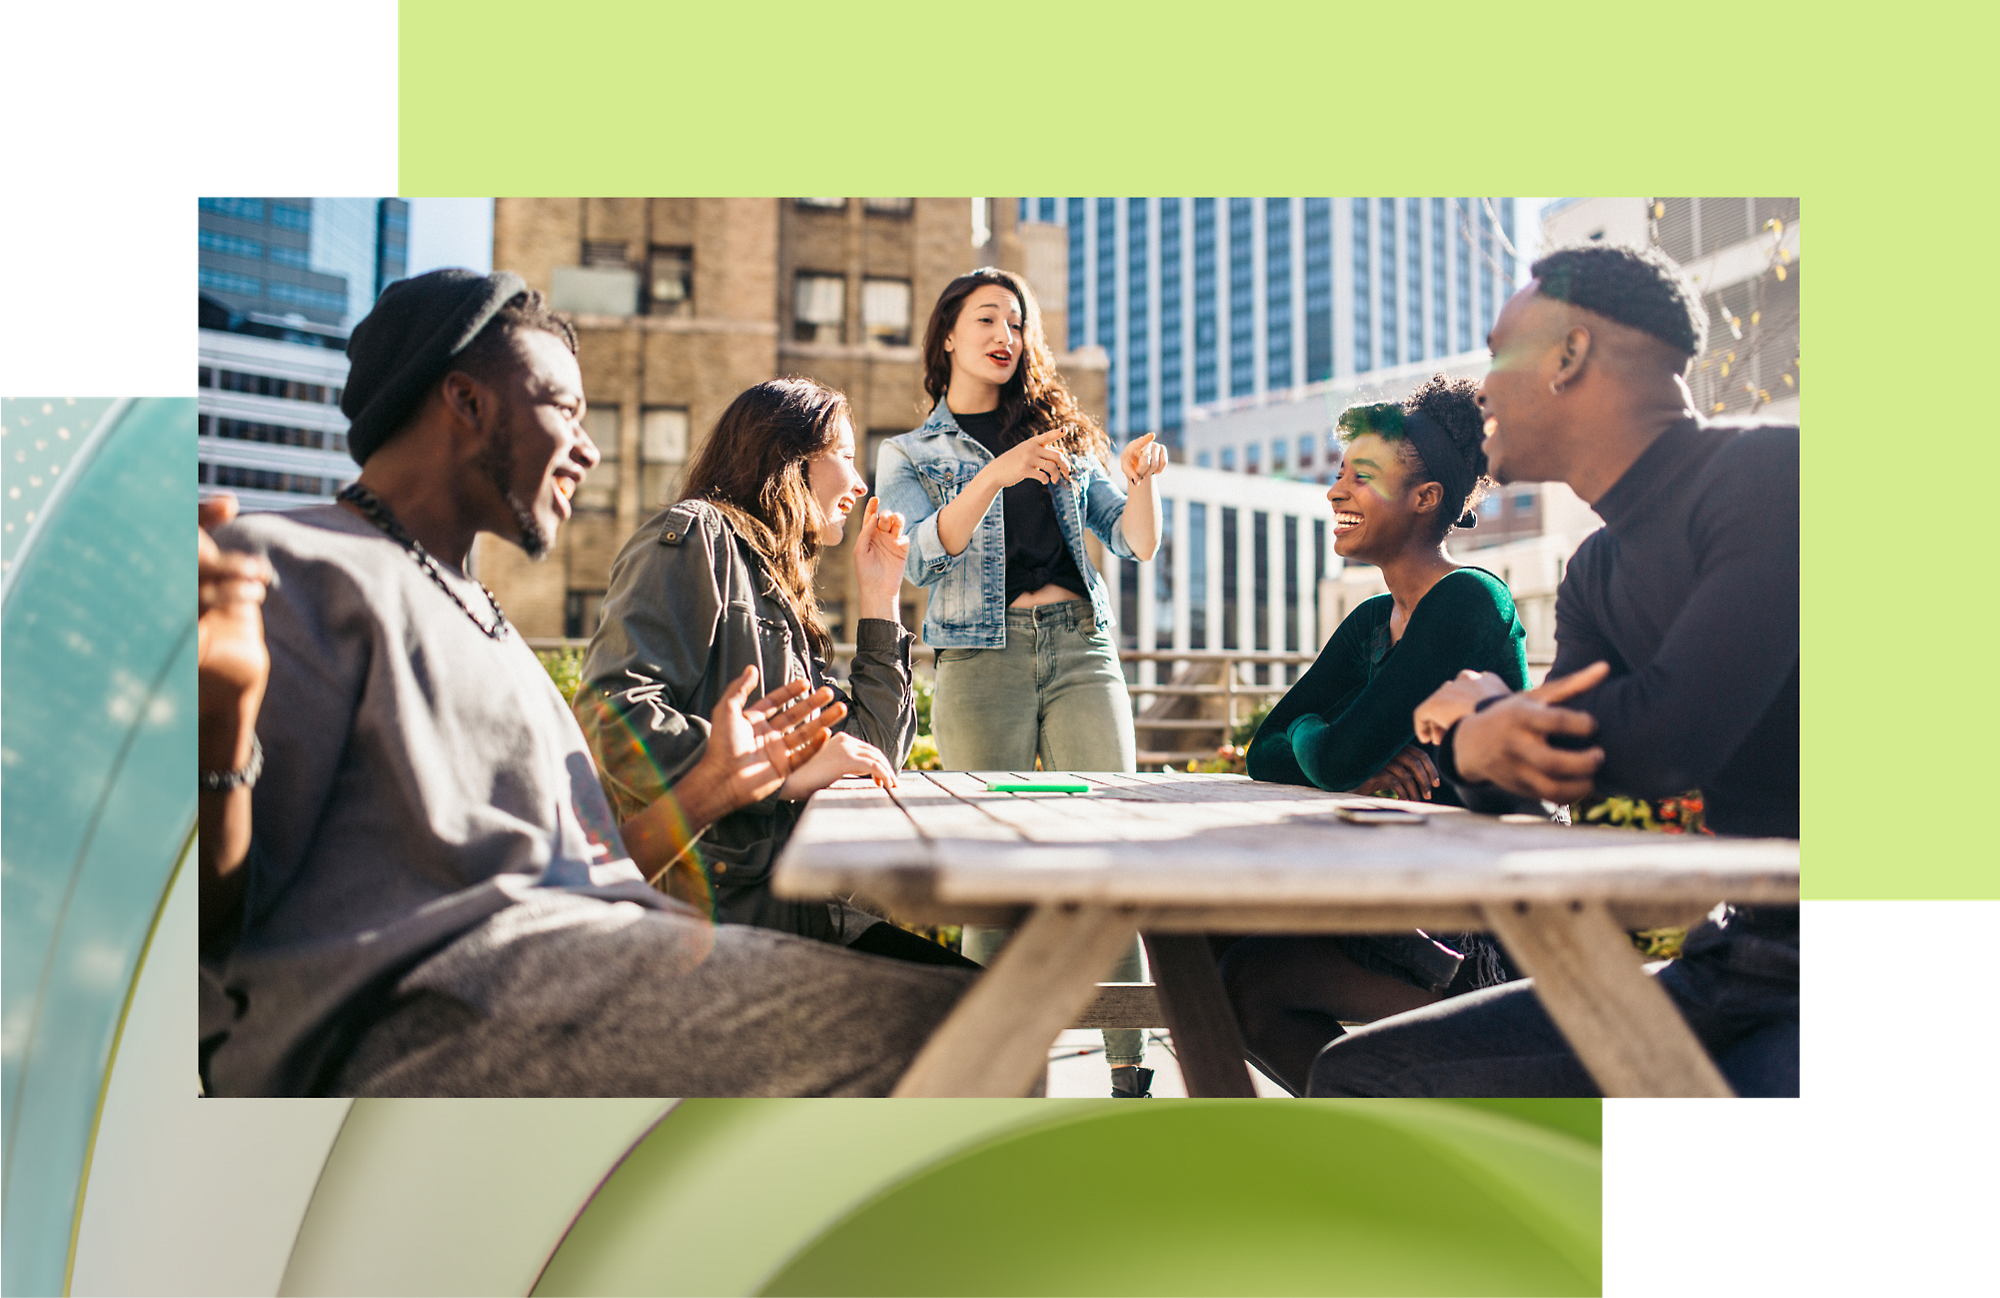 Zróżnicowana grupa młodych osób prowadząca ożywioną dyskusję wokół stołu na zewnątrz w słonecznej miejskiej scenerii.